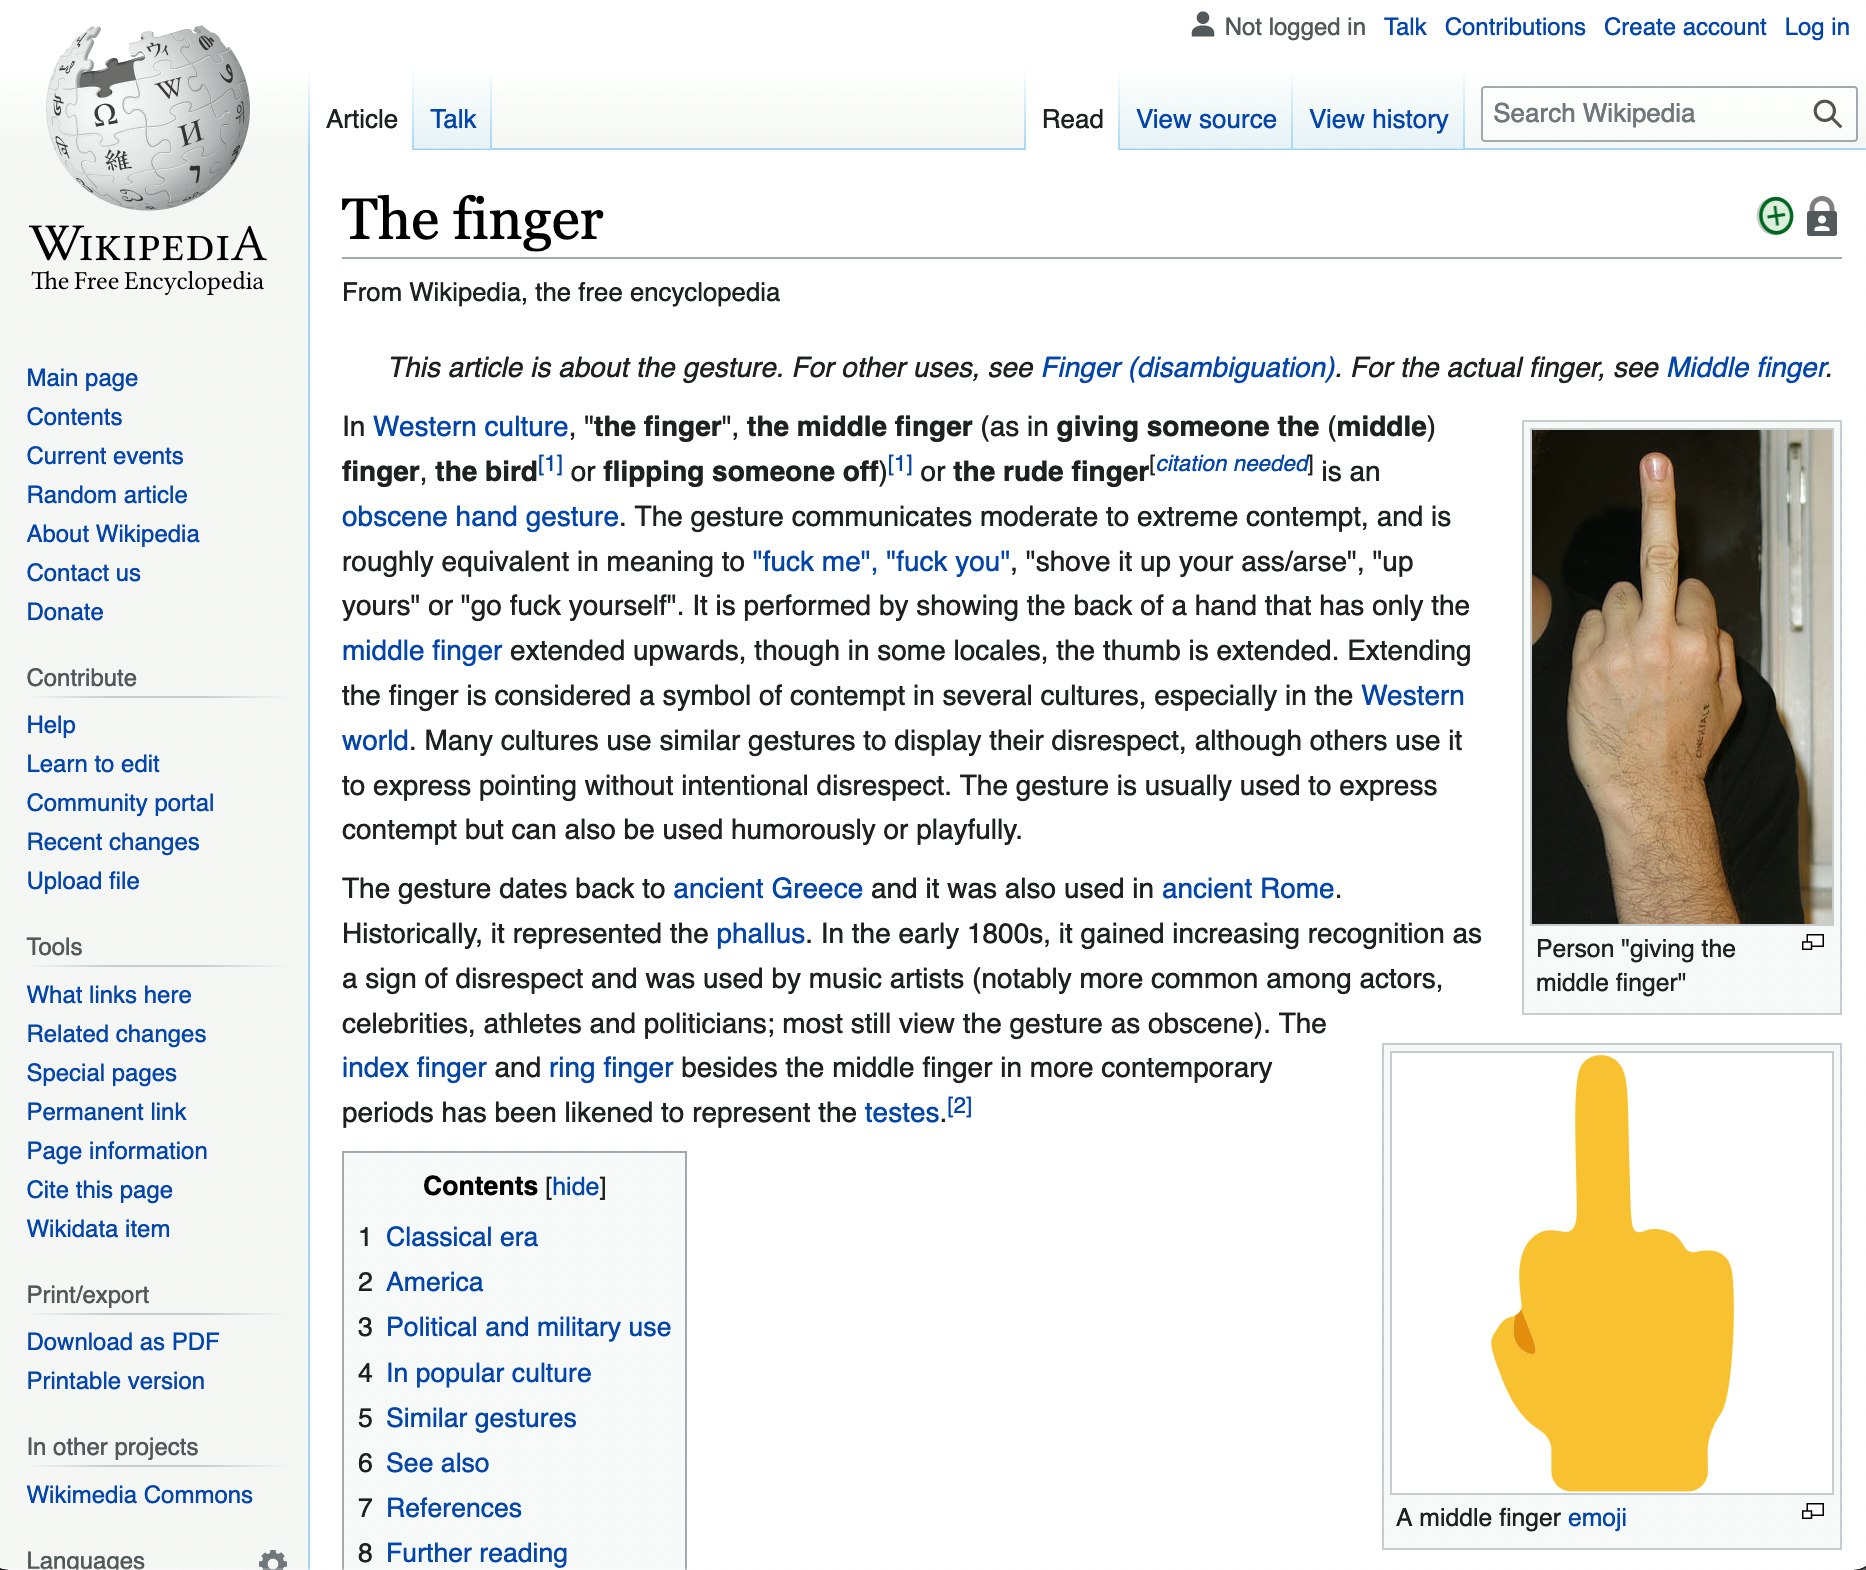 The finger